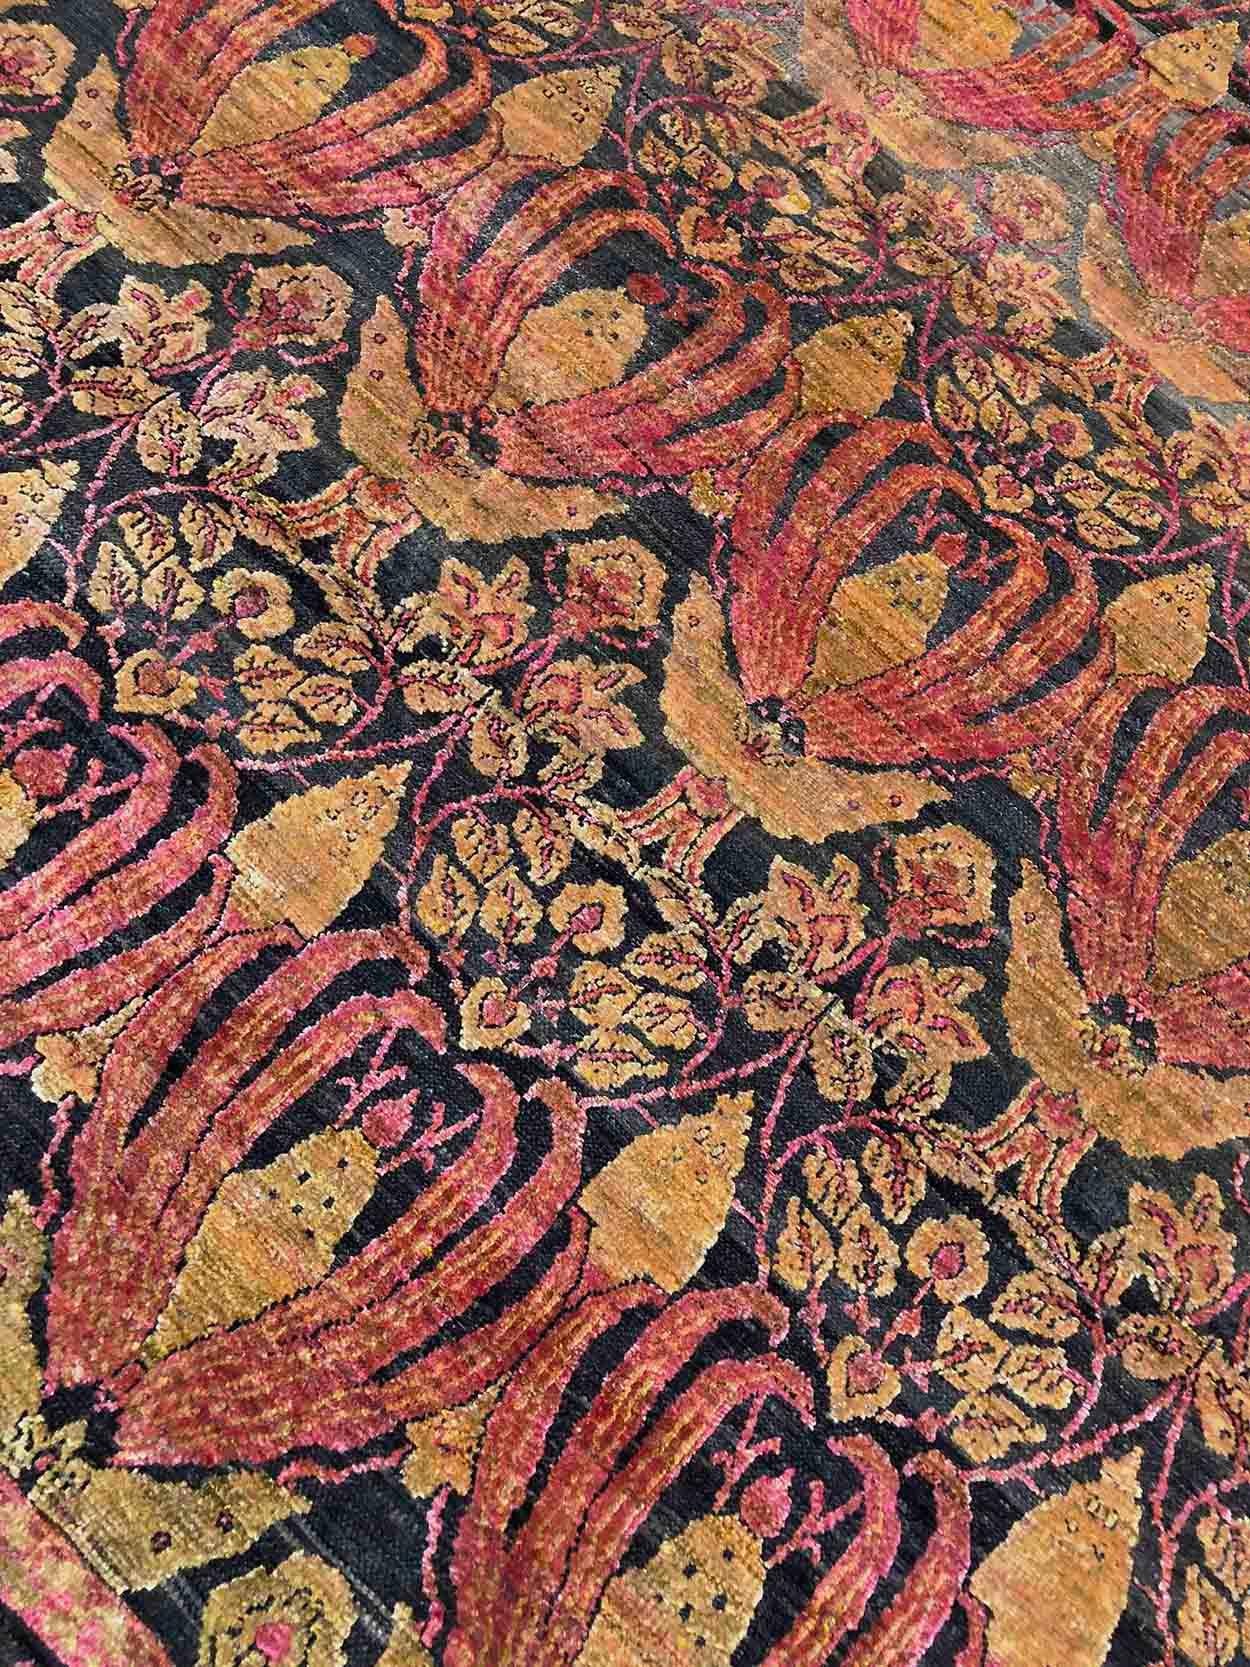 Indian 21st Century Multicolored Sari Silk Rug in Cuenca Design For Sale